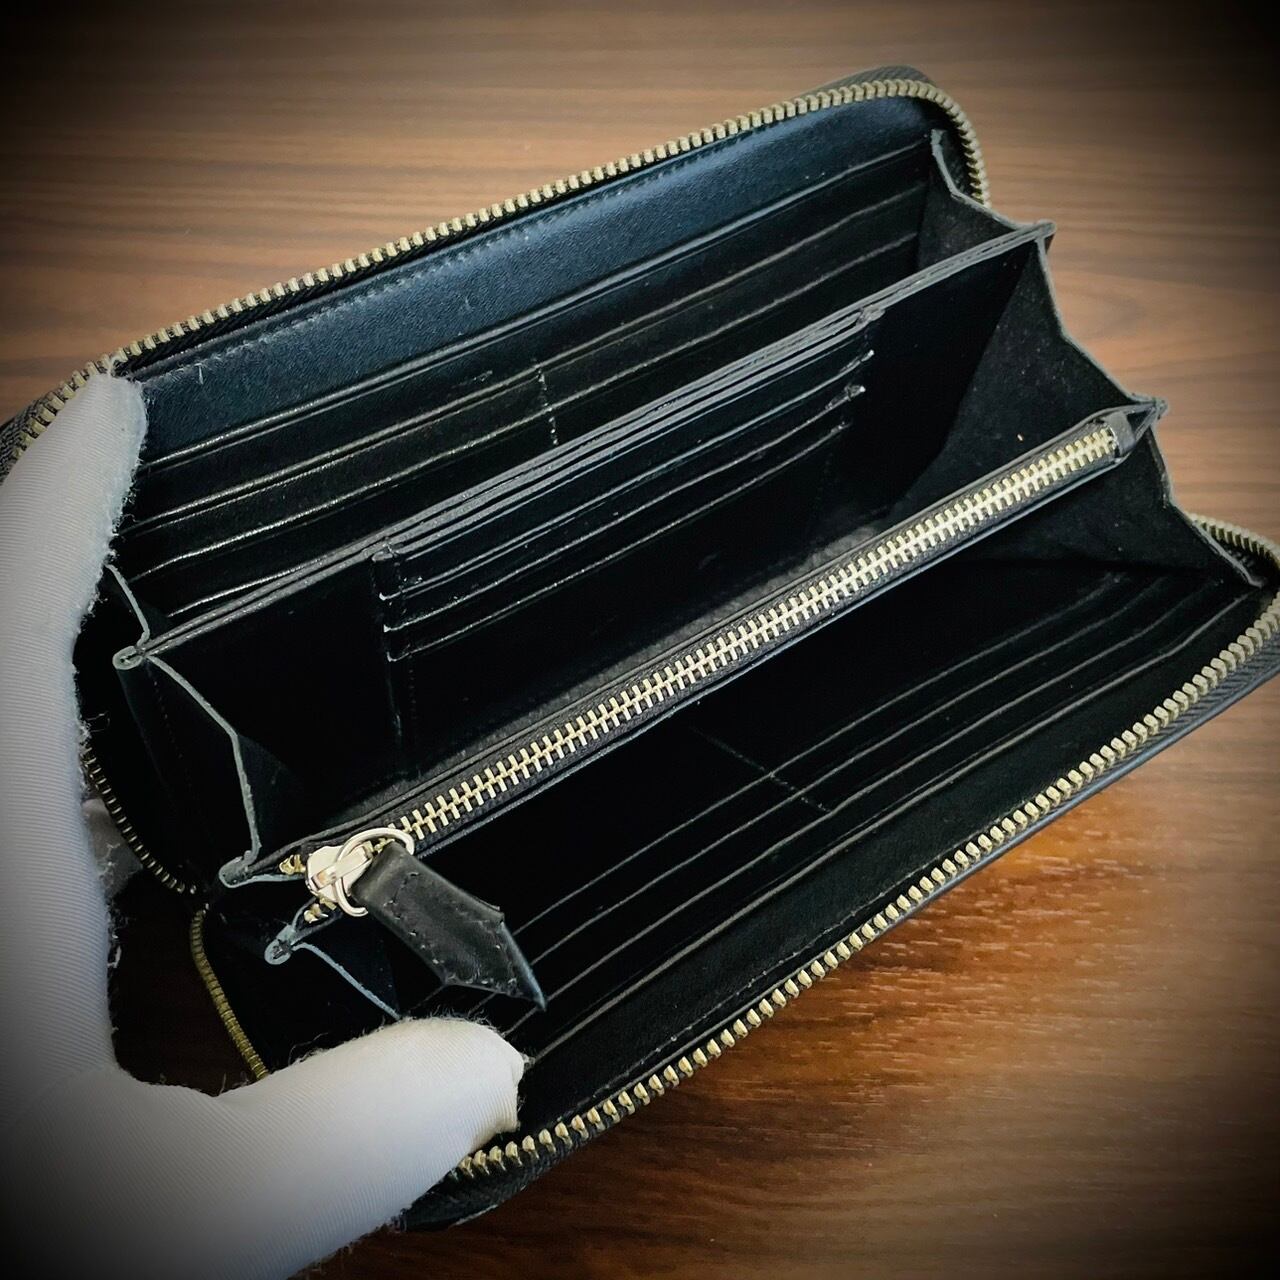 パイソン 長財布 メンズ財布 大容量 レザー 本革 ブラック ブルー YKK表現できないものであります